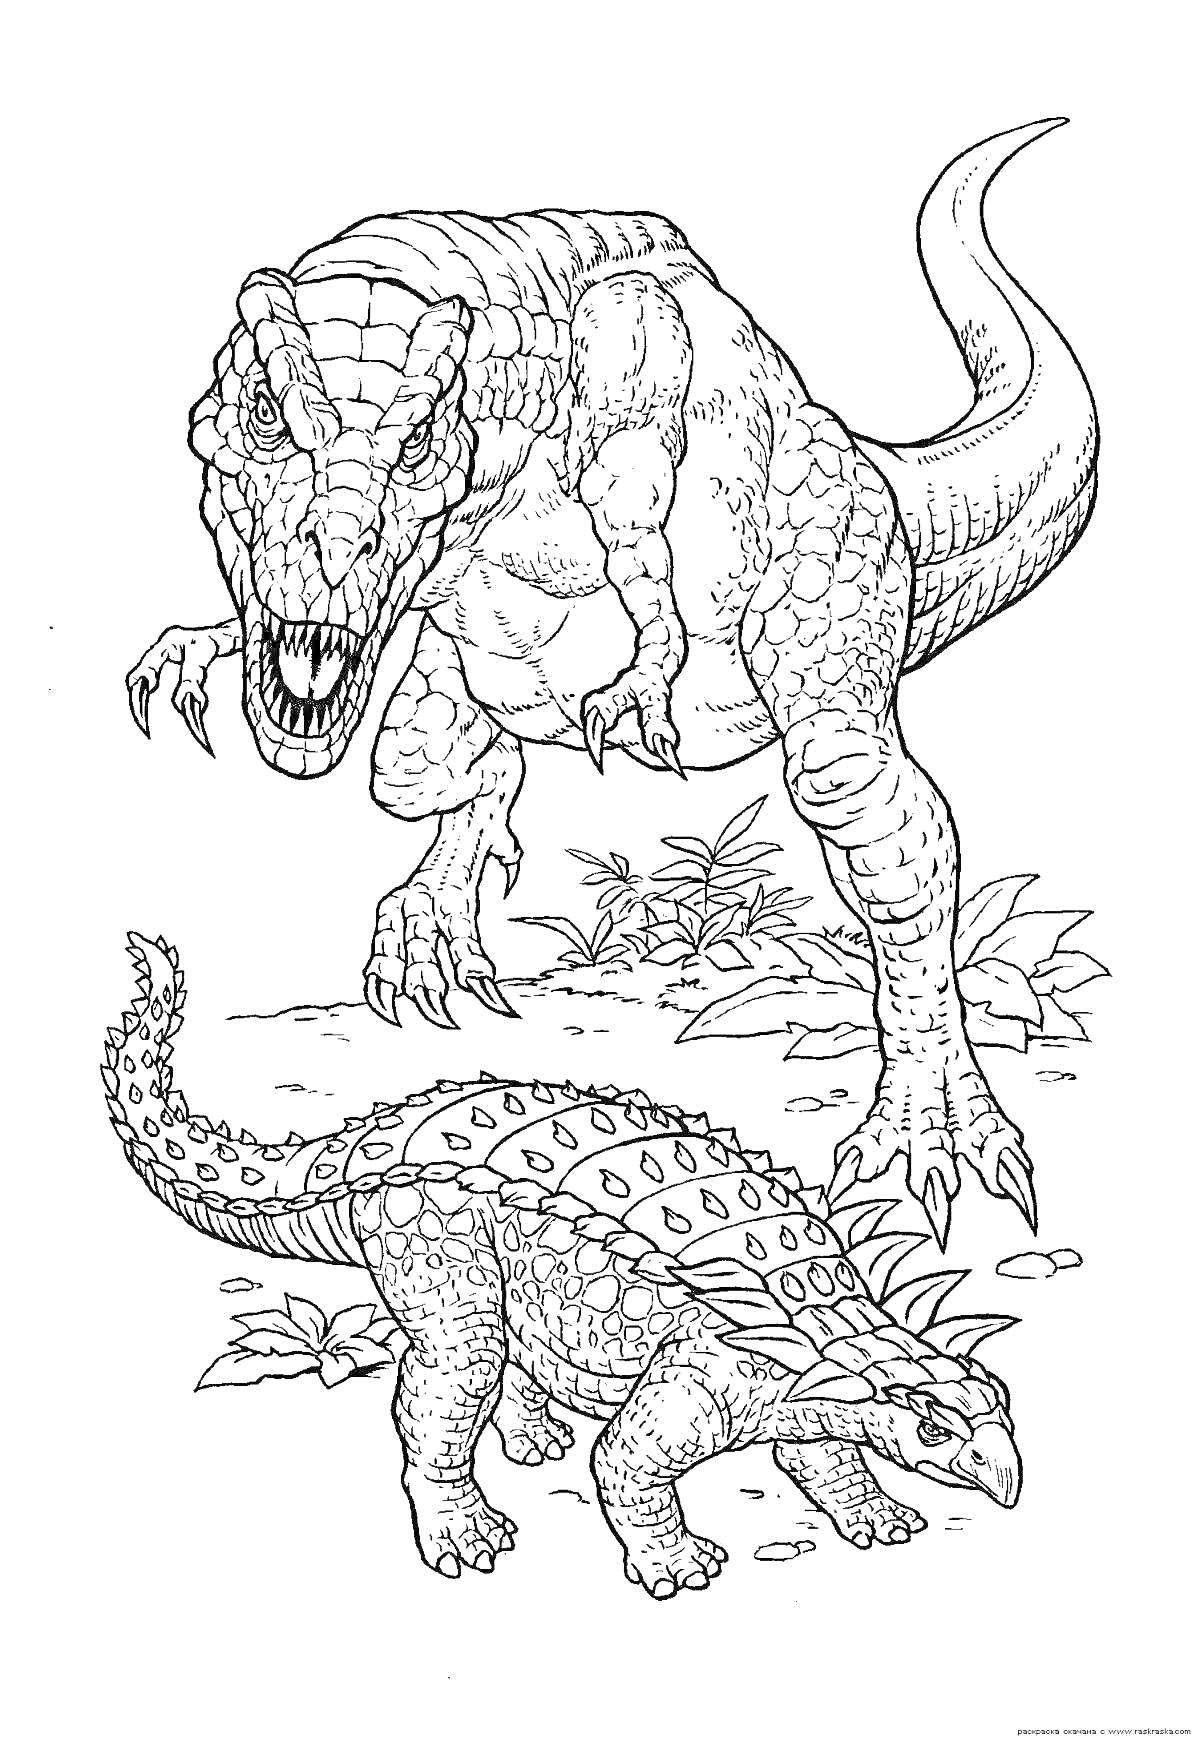 Тираннозавр и анкилозавр на фоне растений